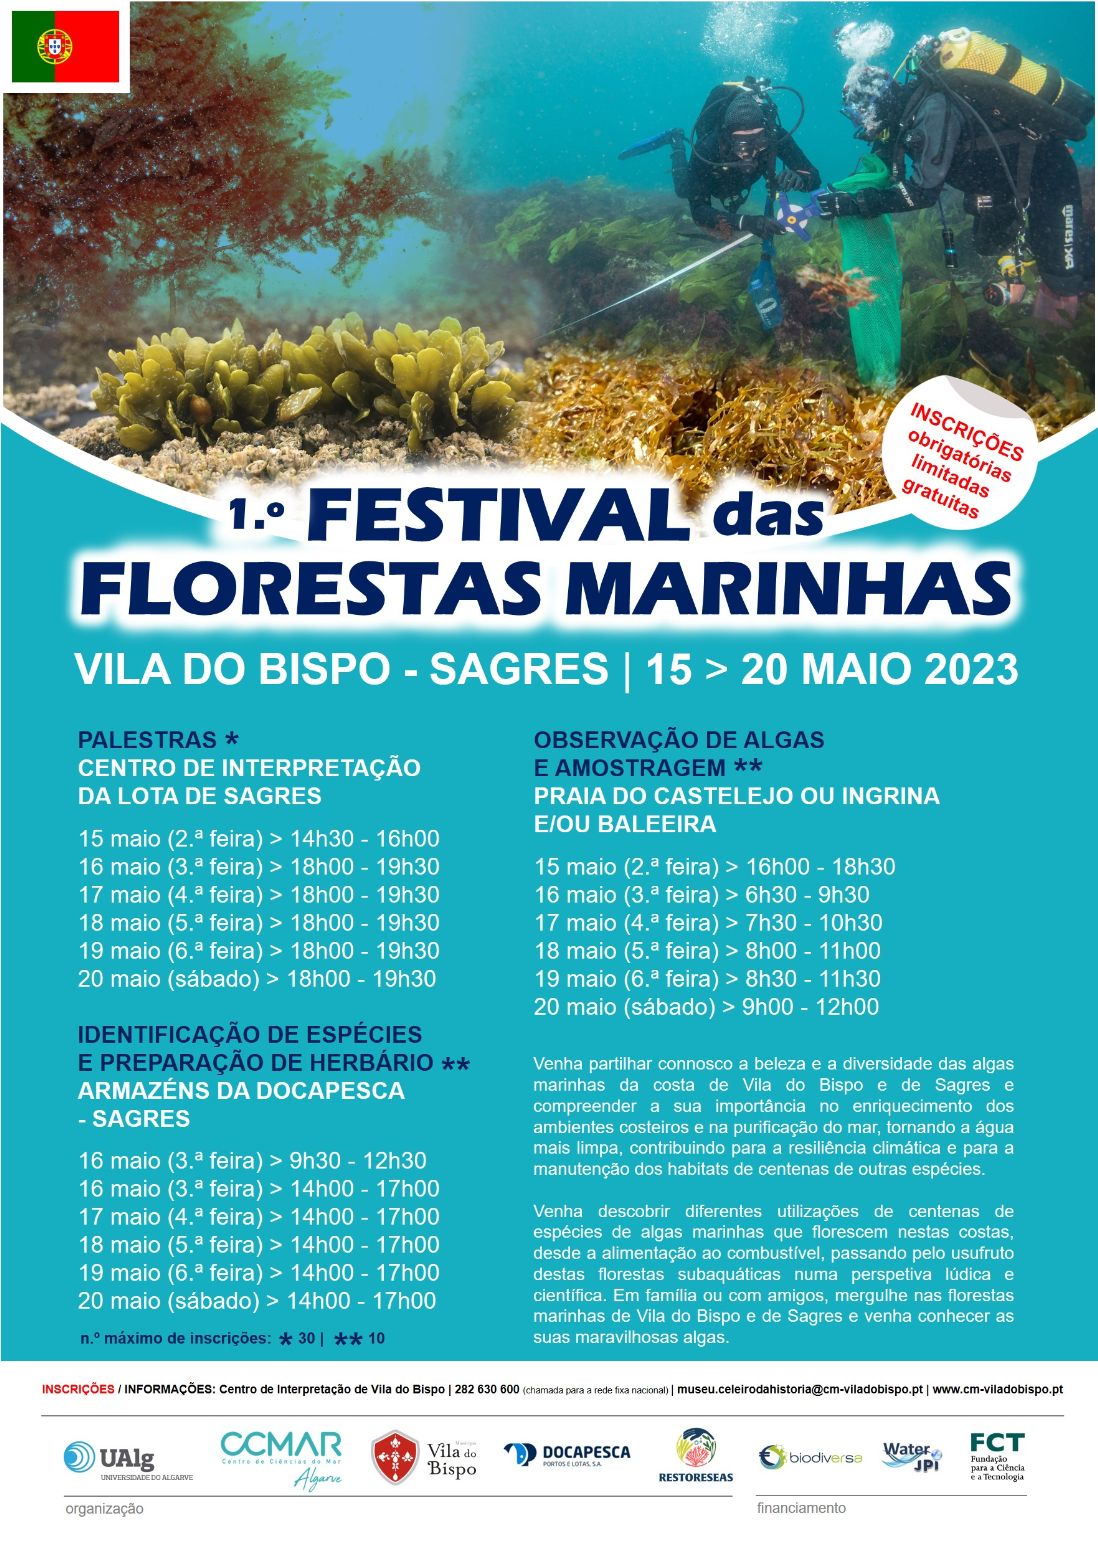 1.º Festival das Florestas Marinhas em Vila do Bispo